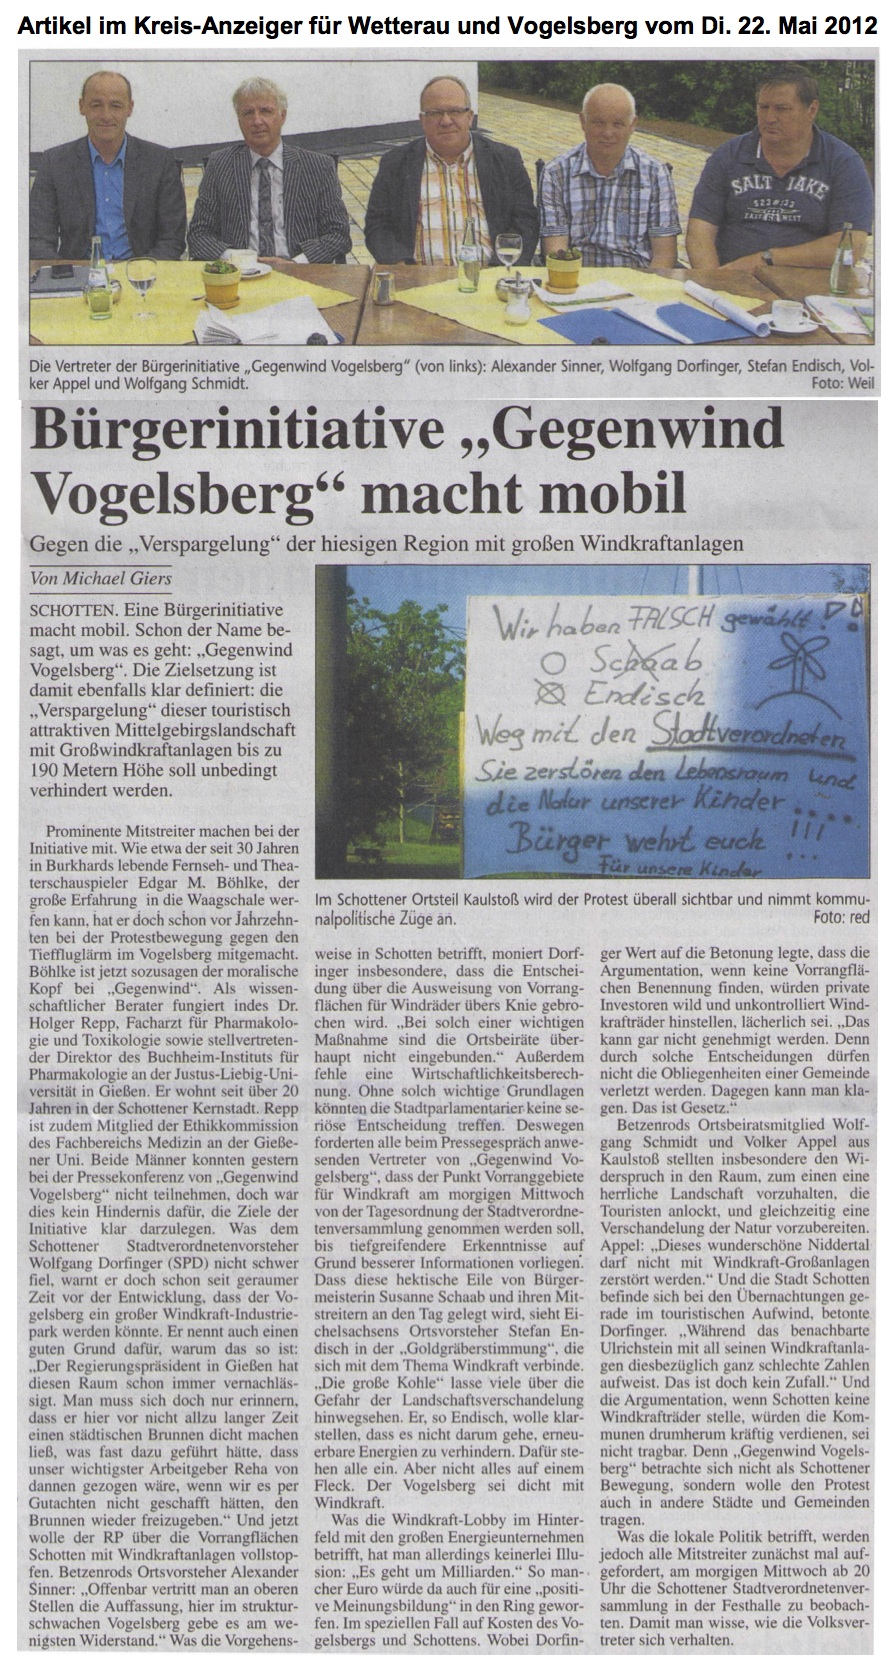 Gründung der BI GwVB um Windkraftpläne im Vogelsbergkreis zu stoppen